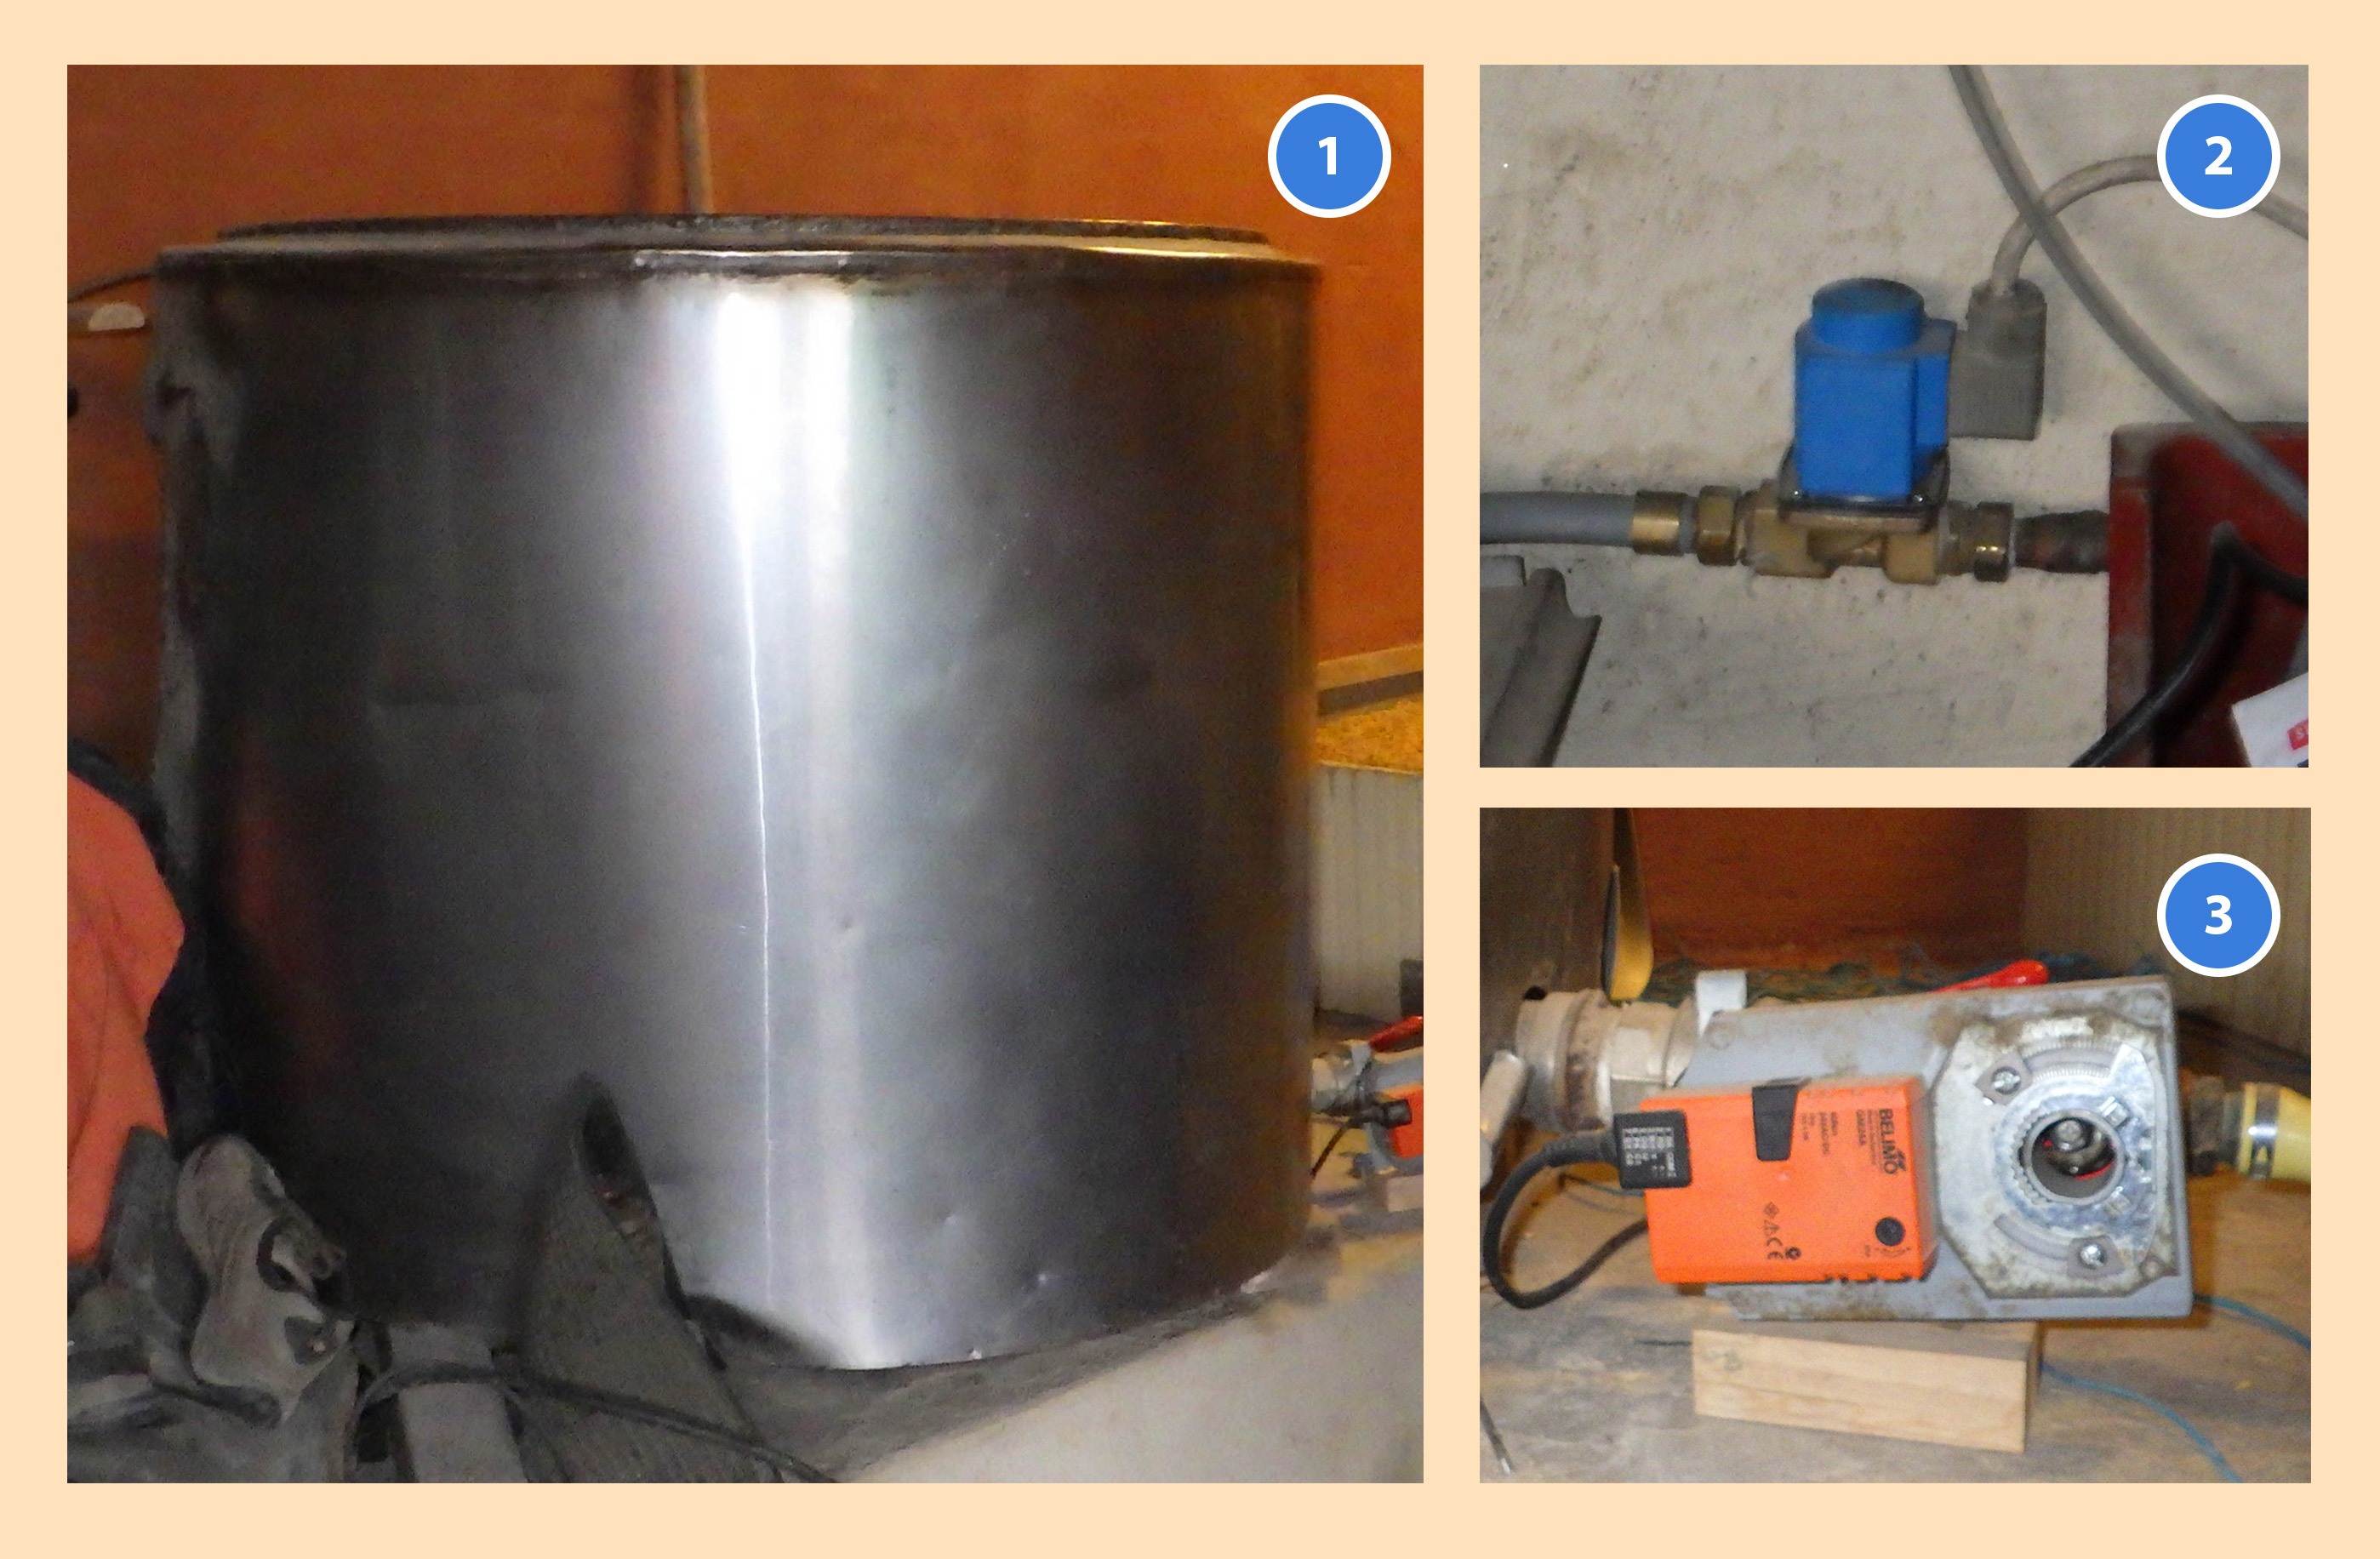 Eléments constitutifs de la cuve de trempe : Un tank à lait (1), une électrovanne (2) et une vanne motorisée (3)